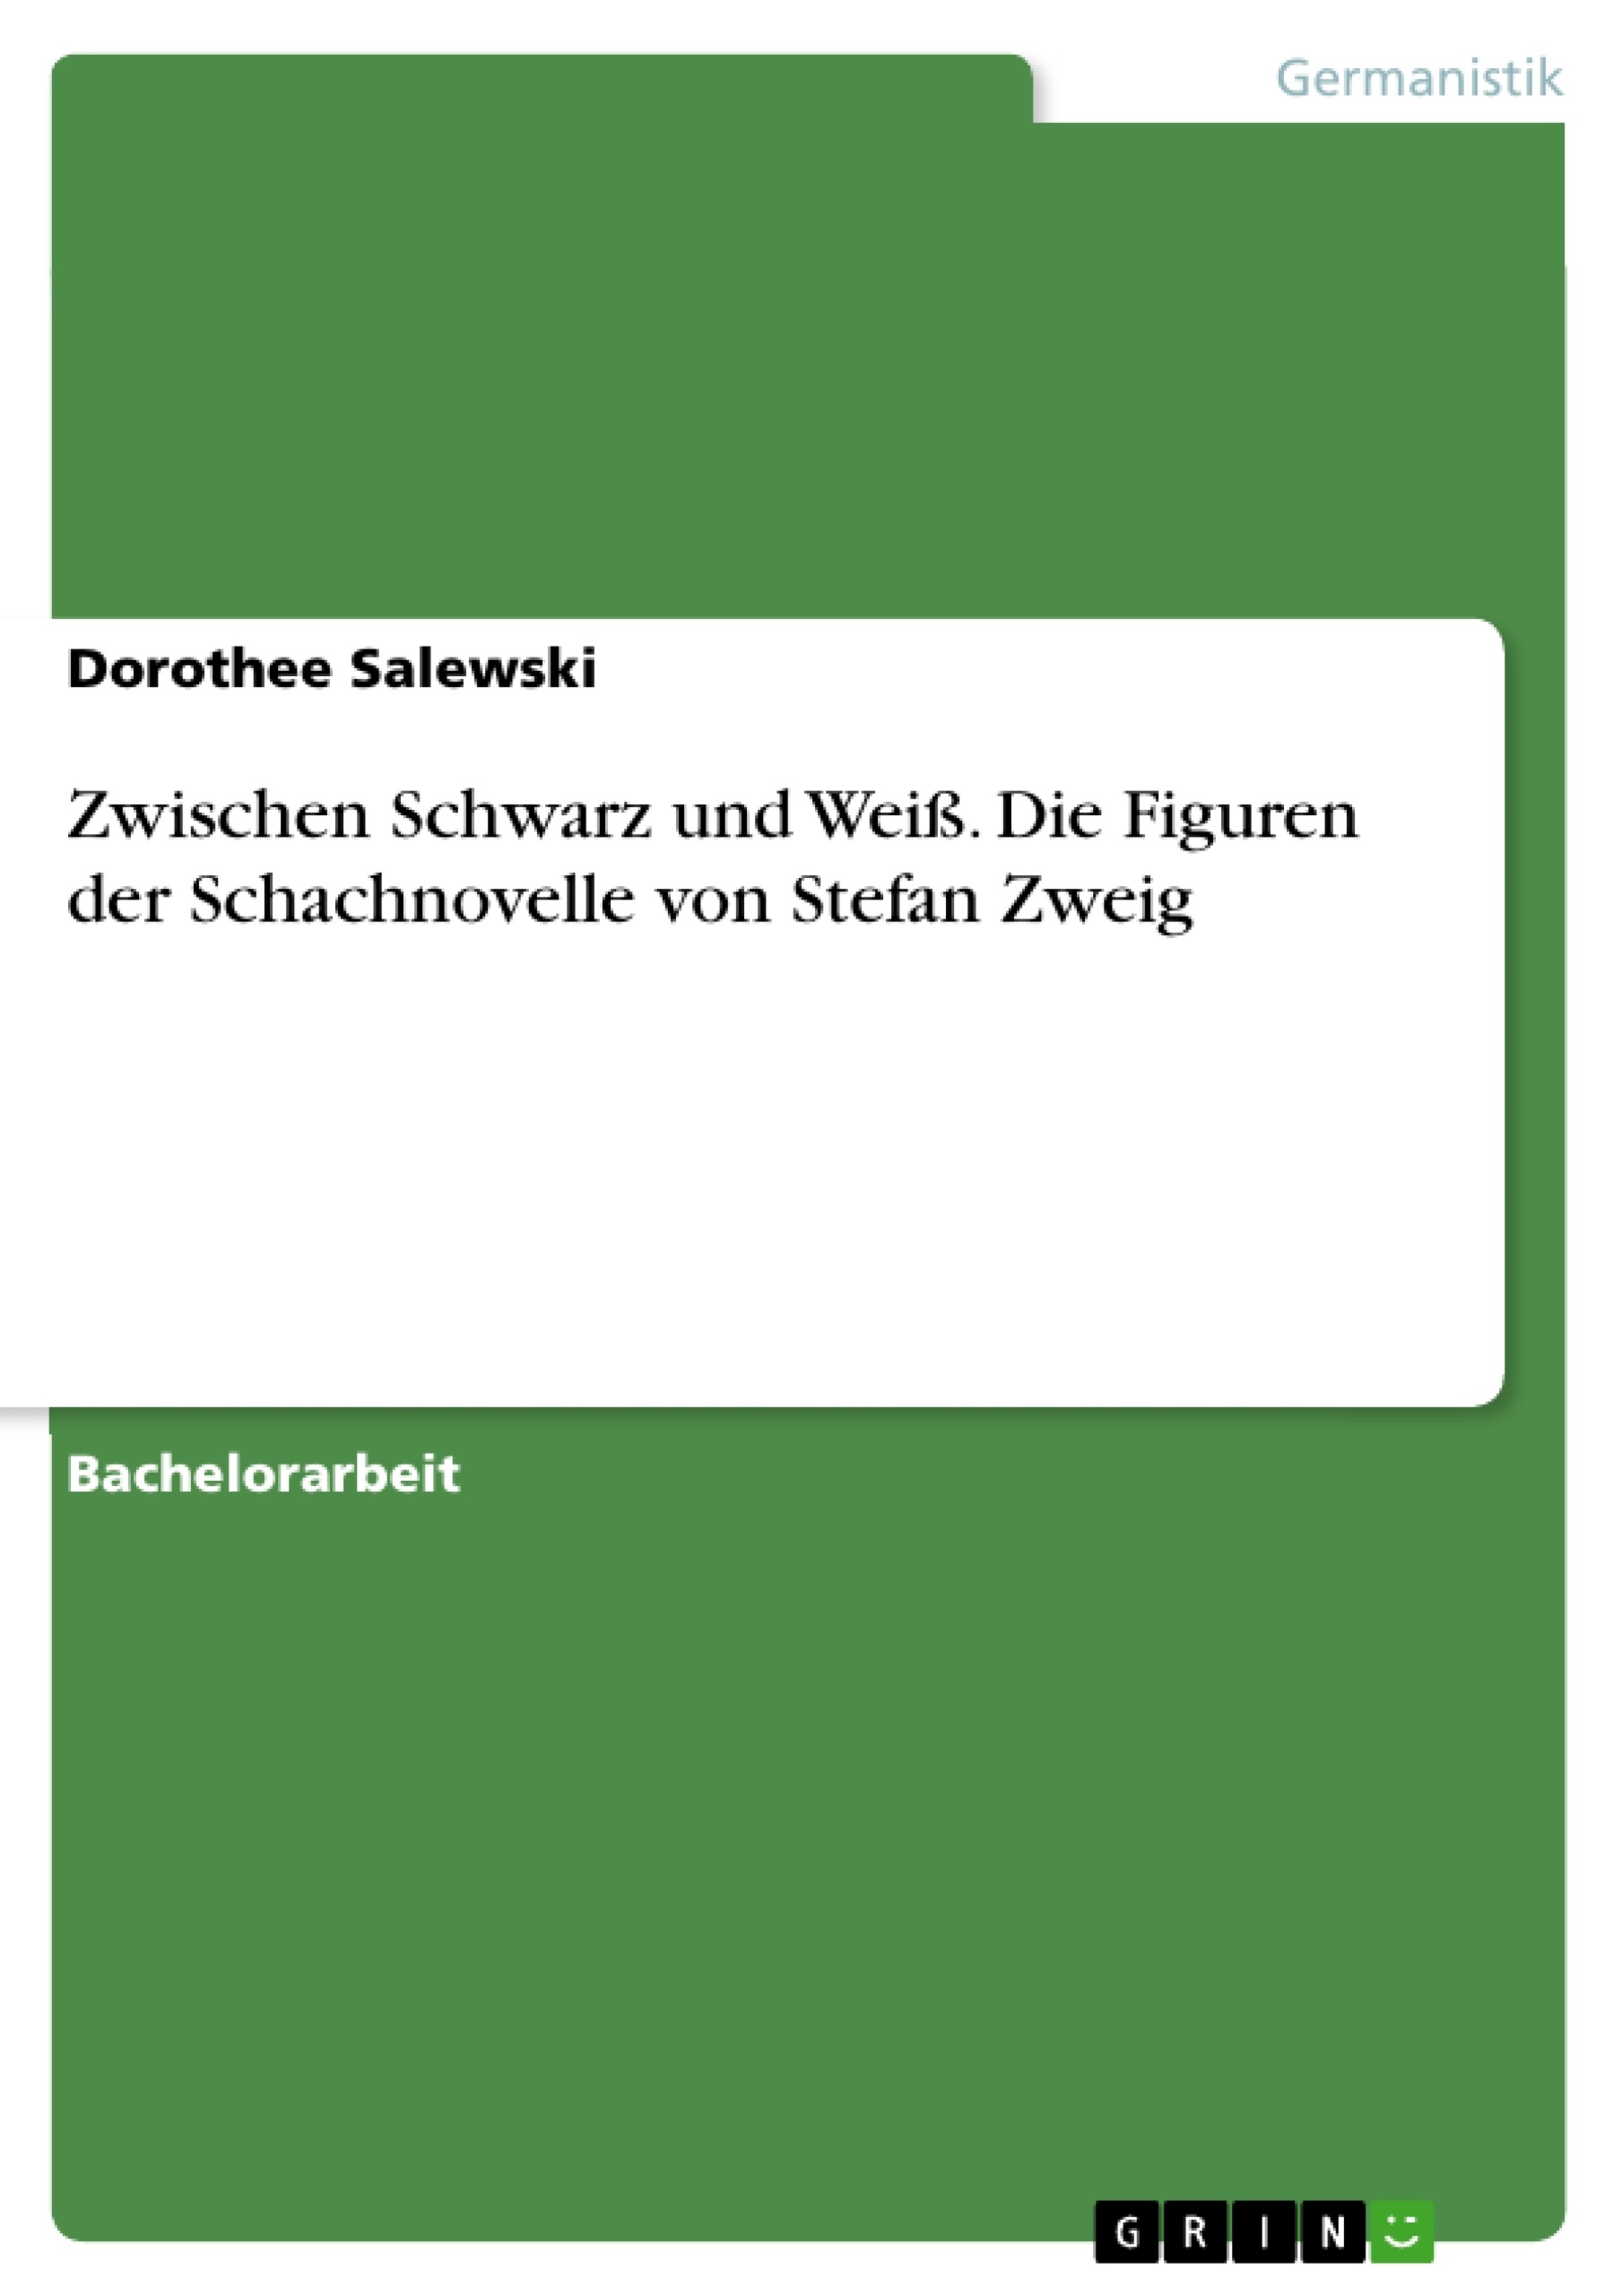 Titre: Zwischen Schwarz und Weiß. Die Figuren der Schachnovelle von Stefan Zweig